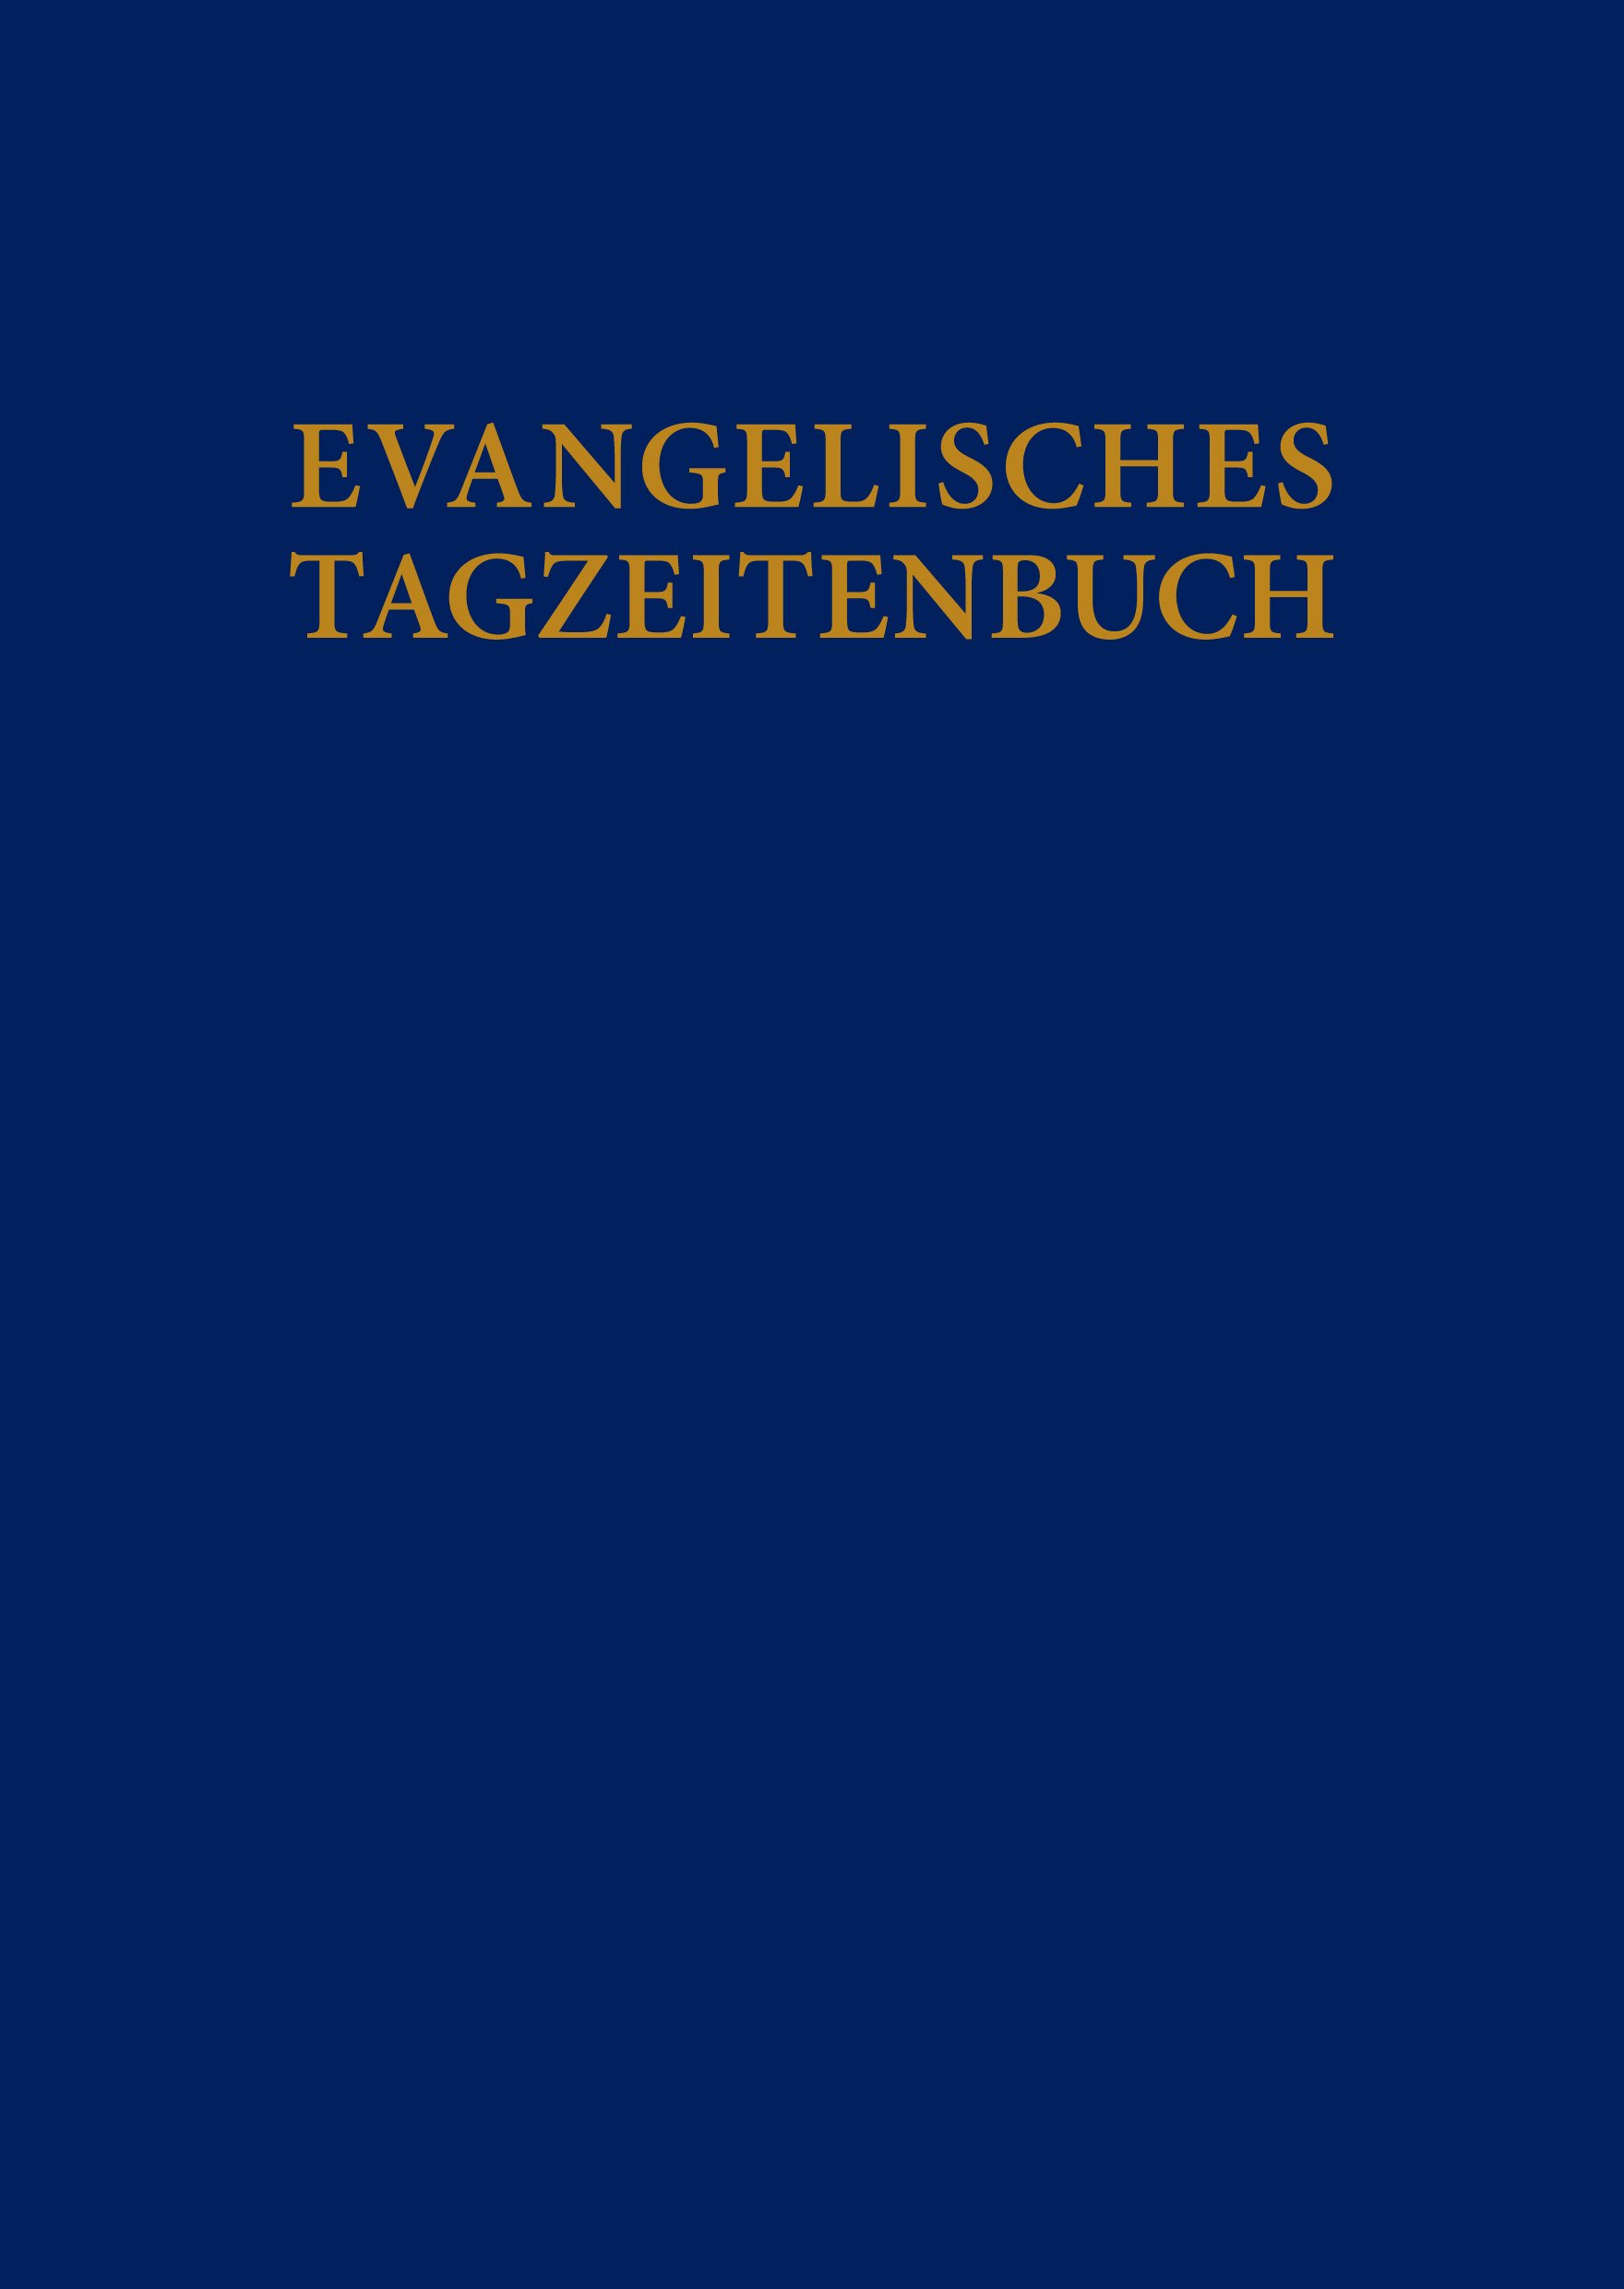 Evangelisches Tagzeitenbuch - Cover